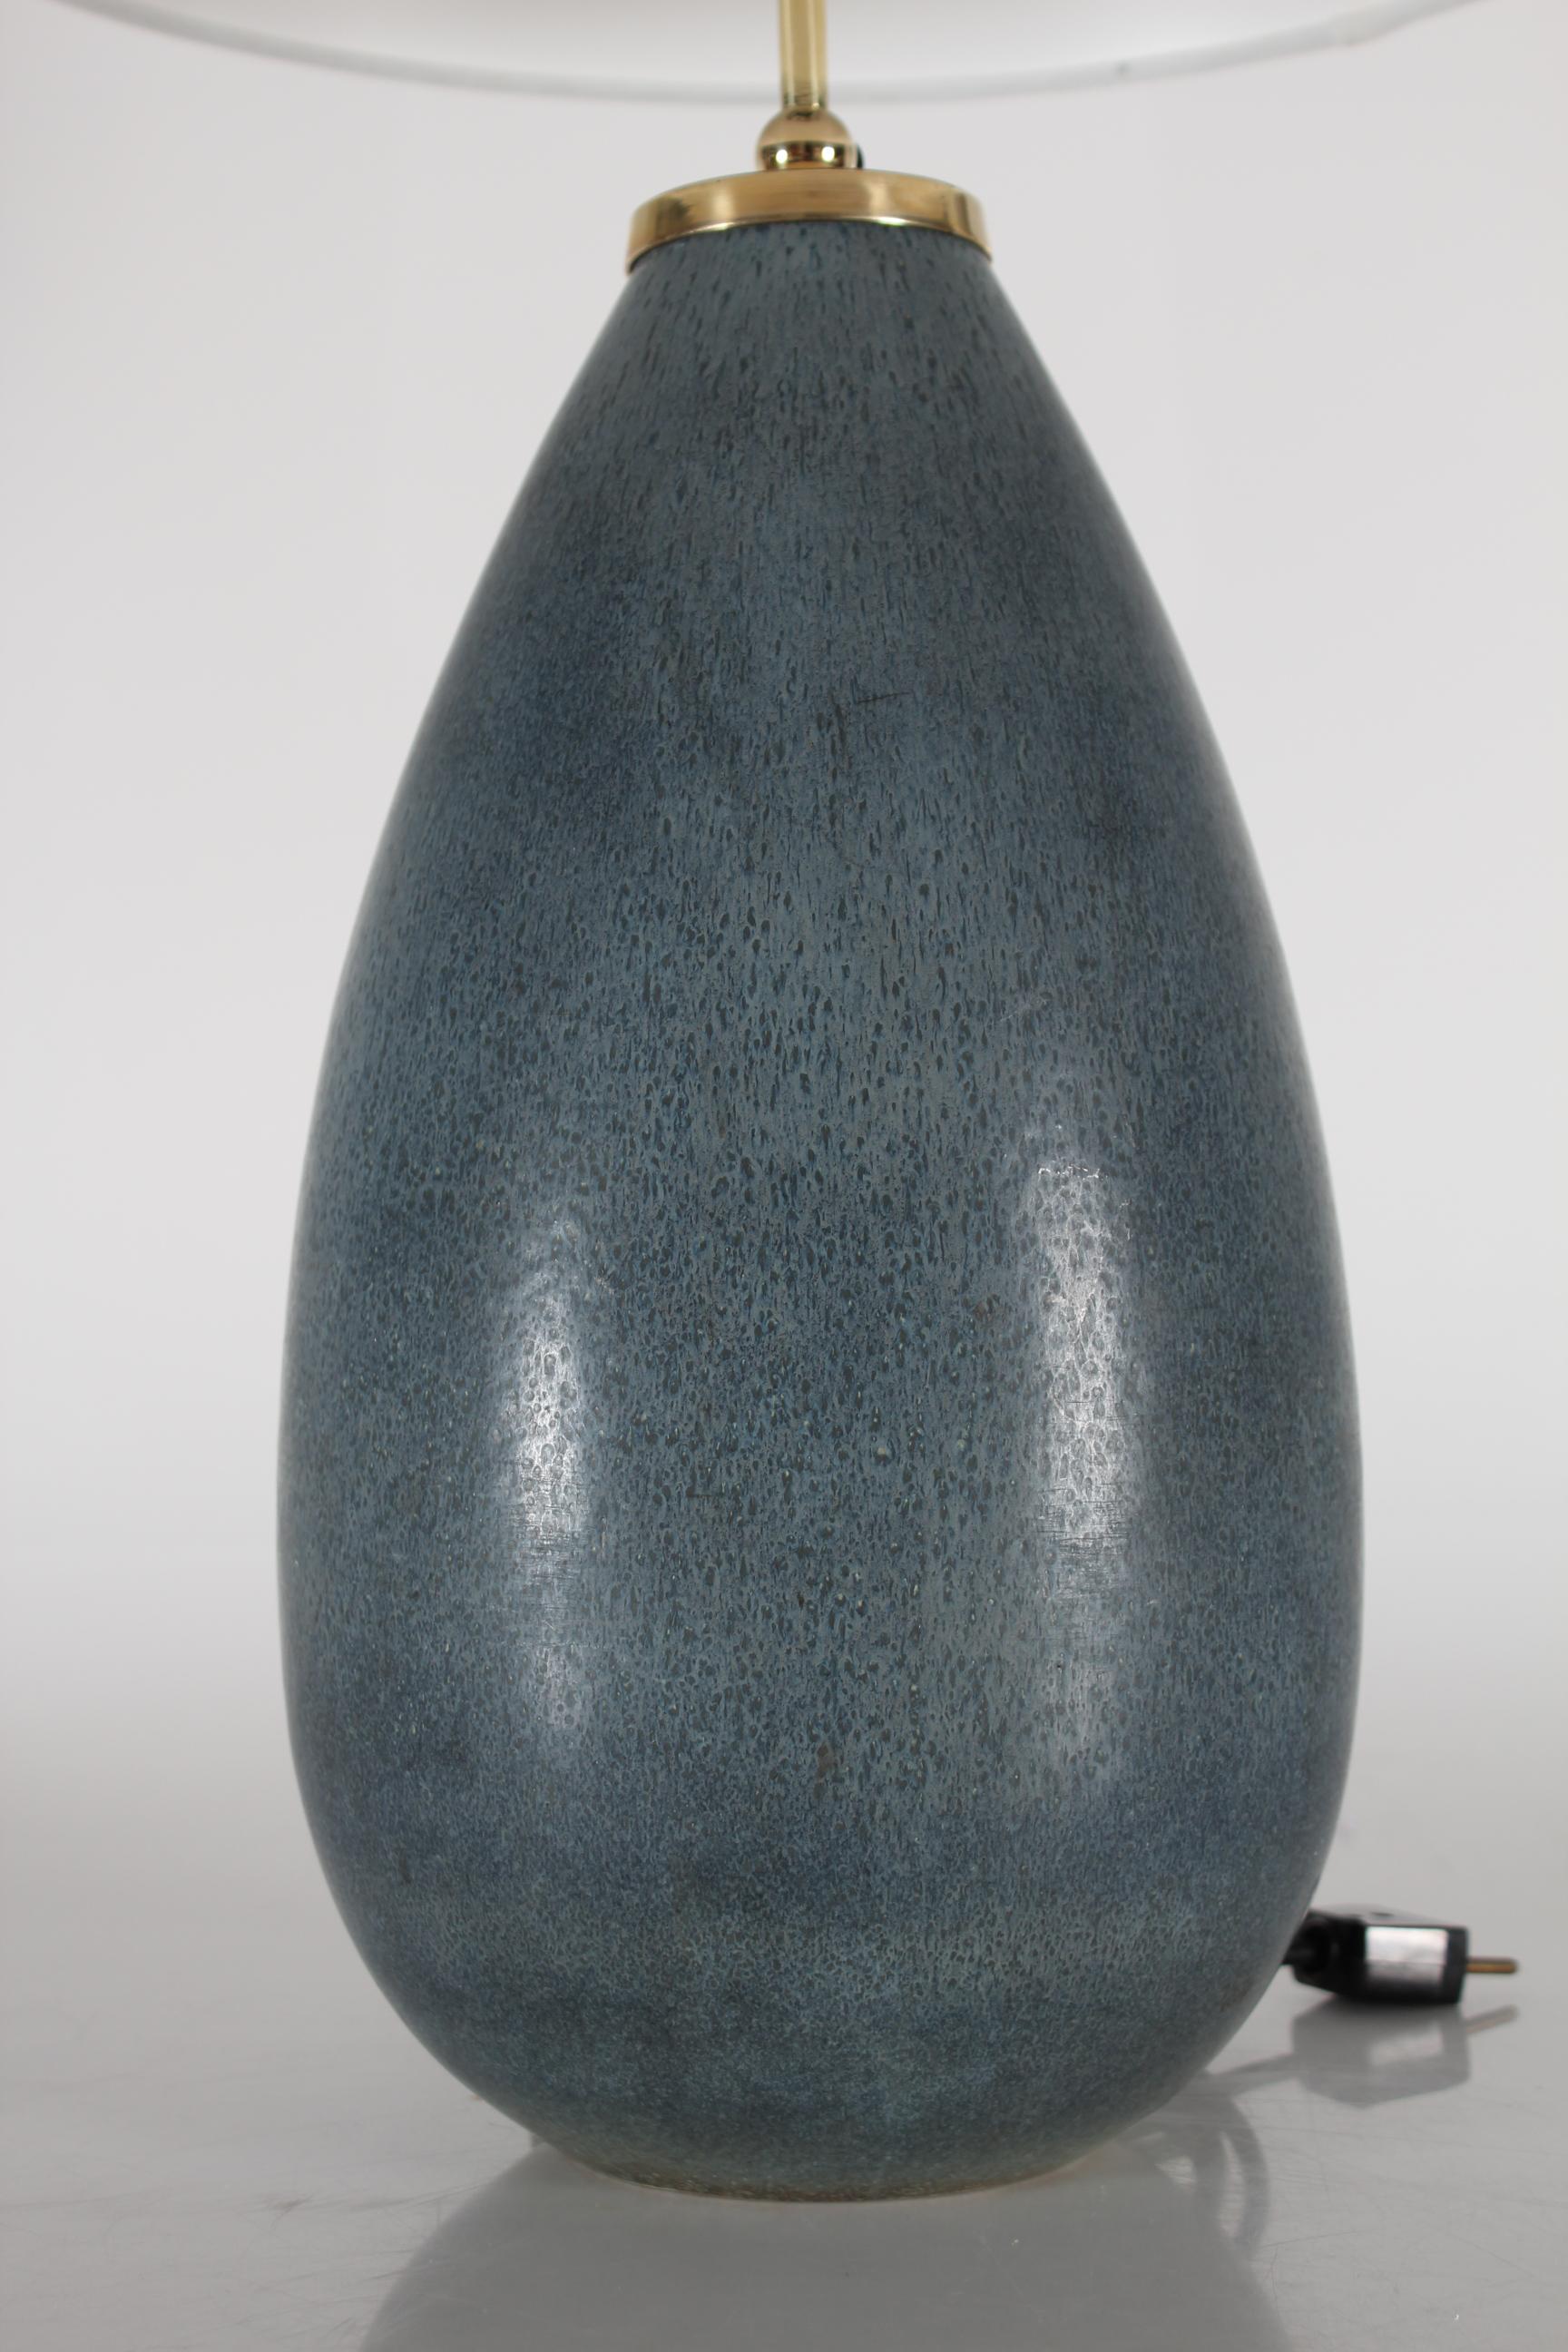 Grande lampe de table en forme de goutte presque énorme créée par le célèbre céramiste suédois Carl-Harry Stålhane (1920-1990). 
Il est fabriqué par Rörstrand Suède dans les années 1960.

La base de la lampe est décorée d'une glaçure en fourrure de